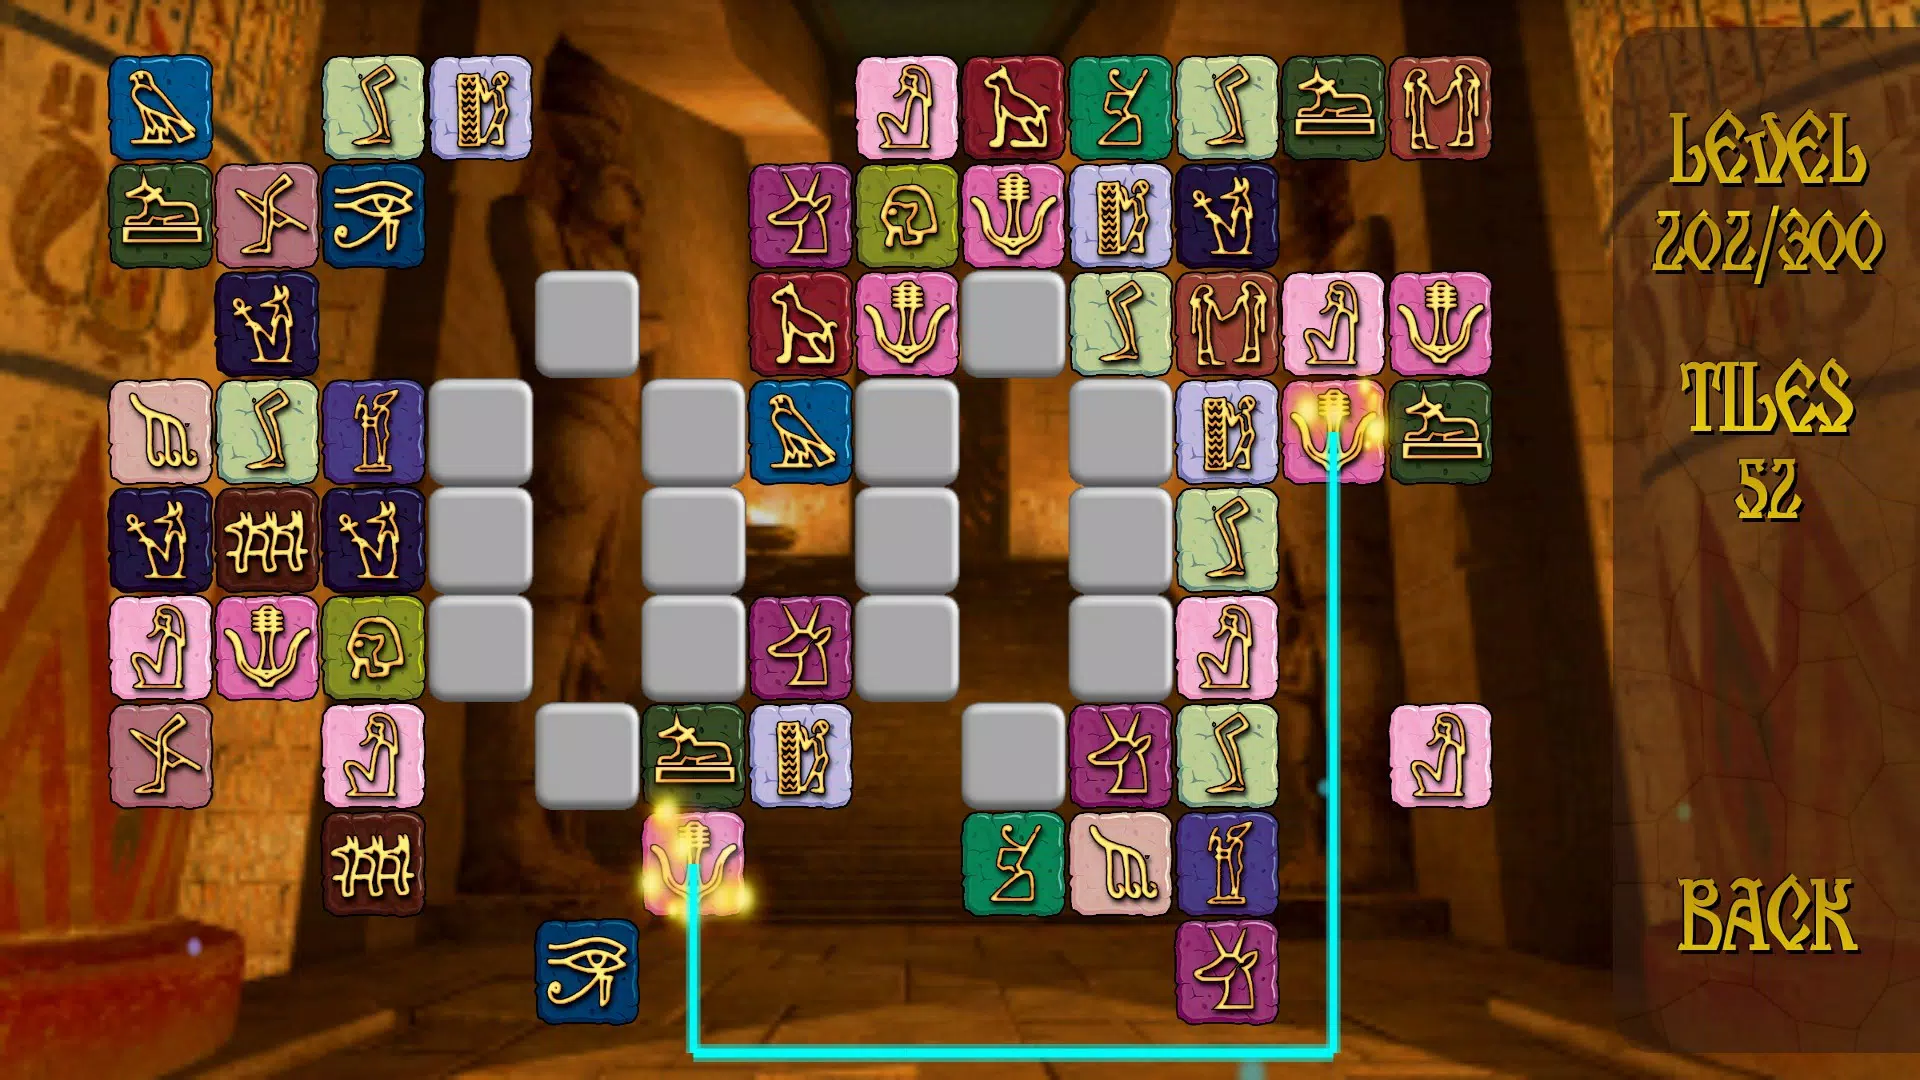 247 Pyramid Mahjong 1.0 Free Download